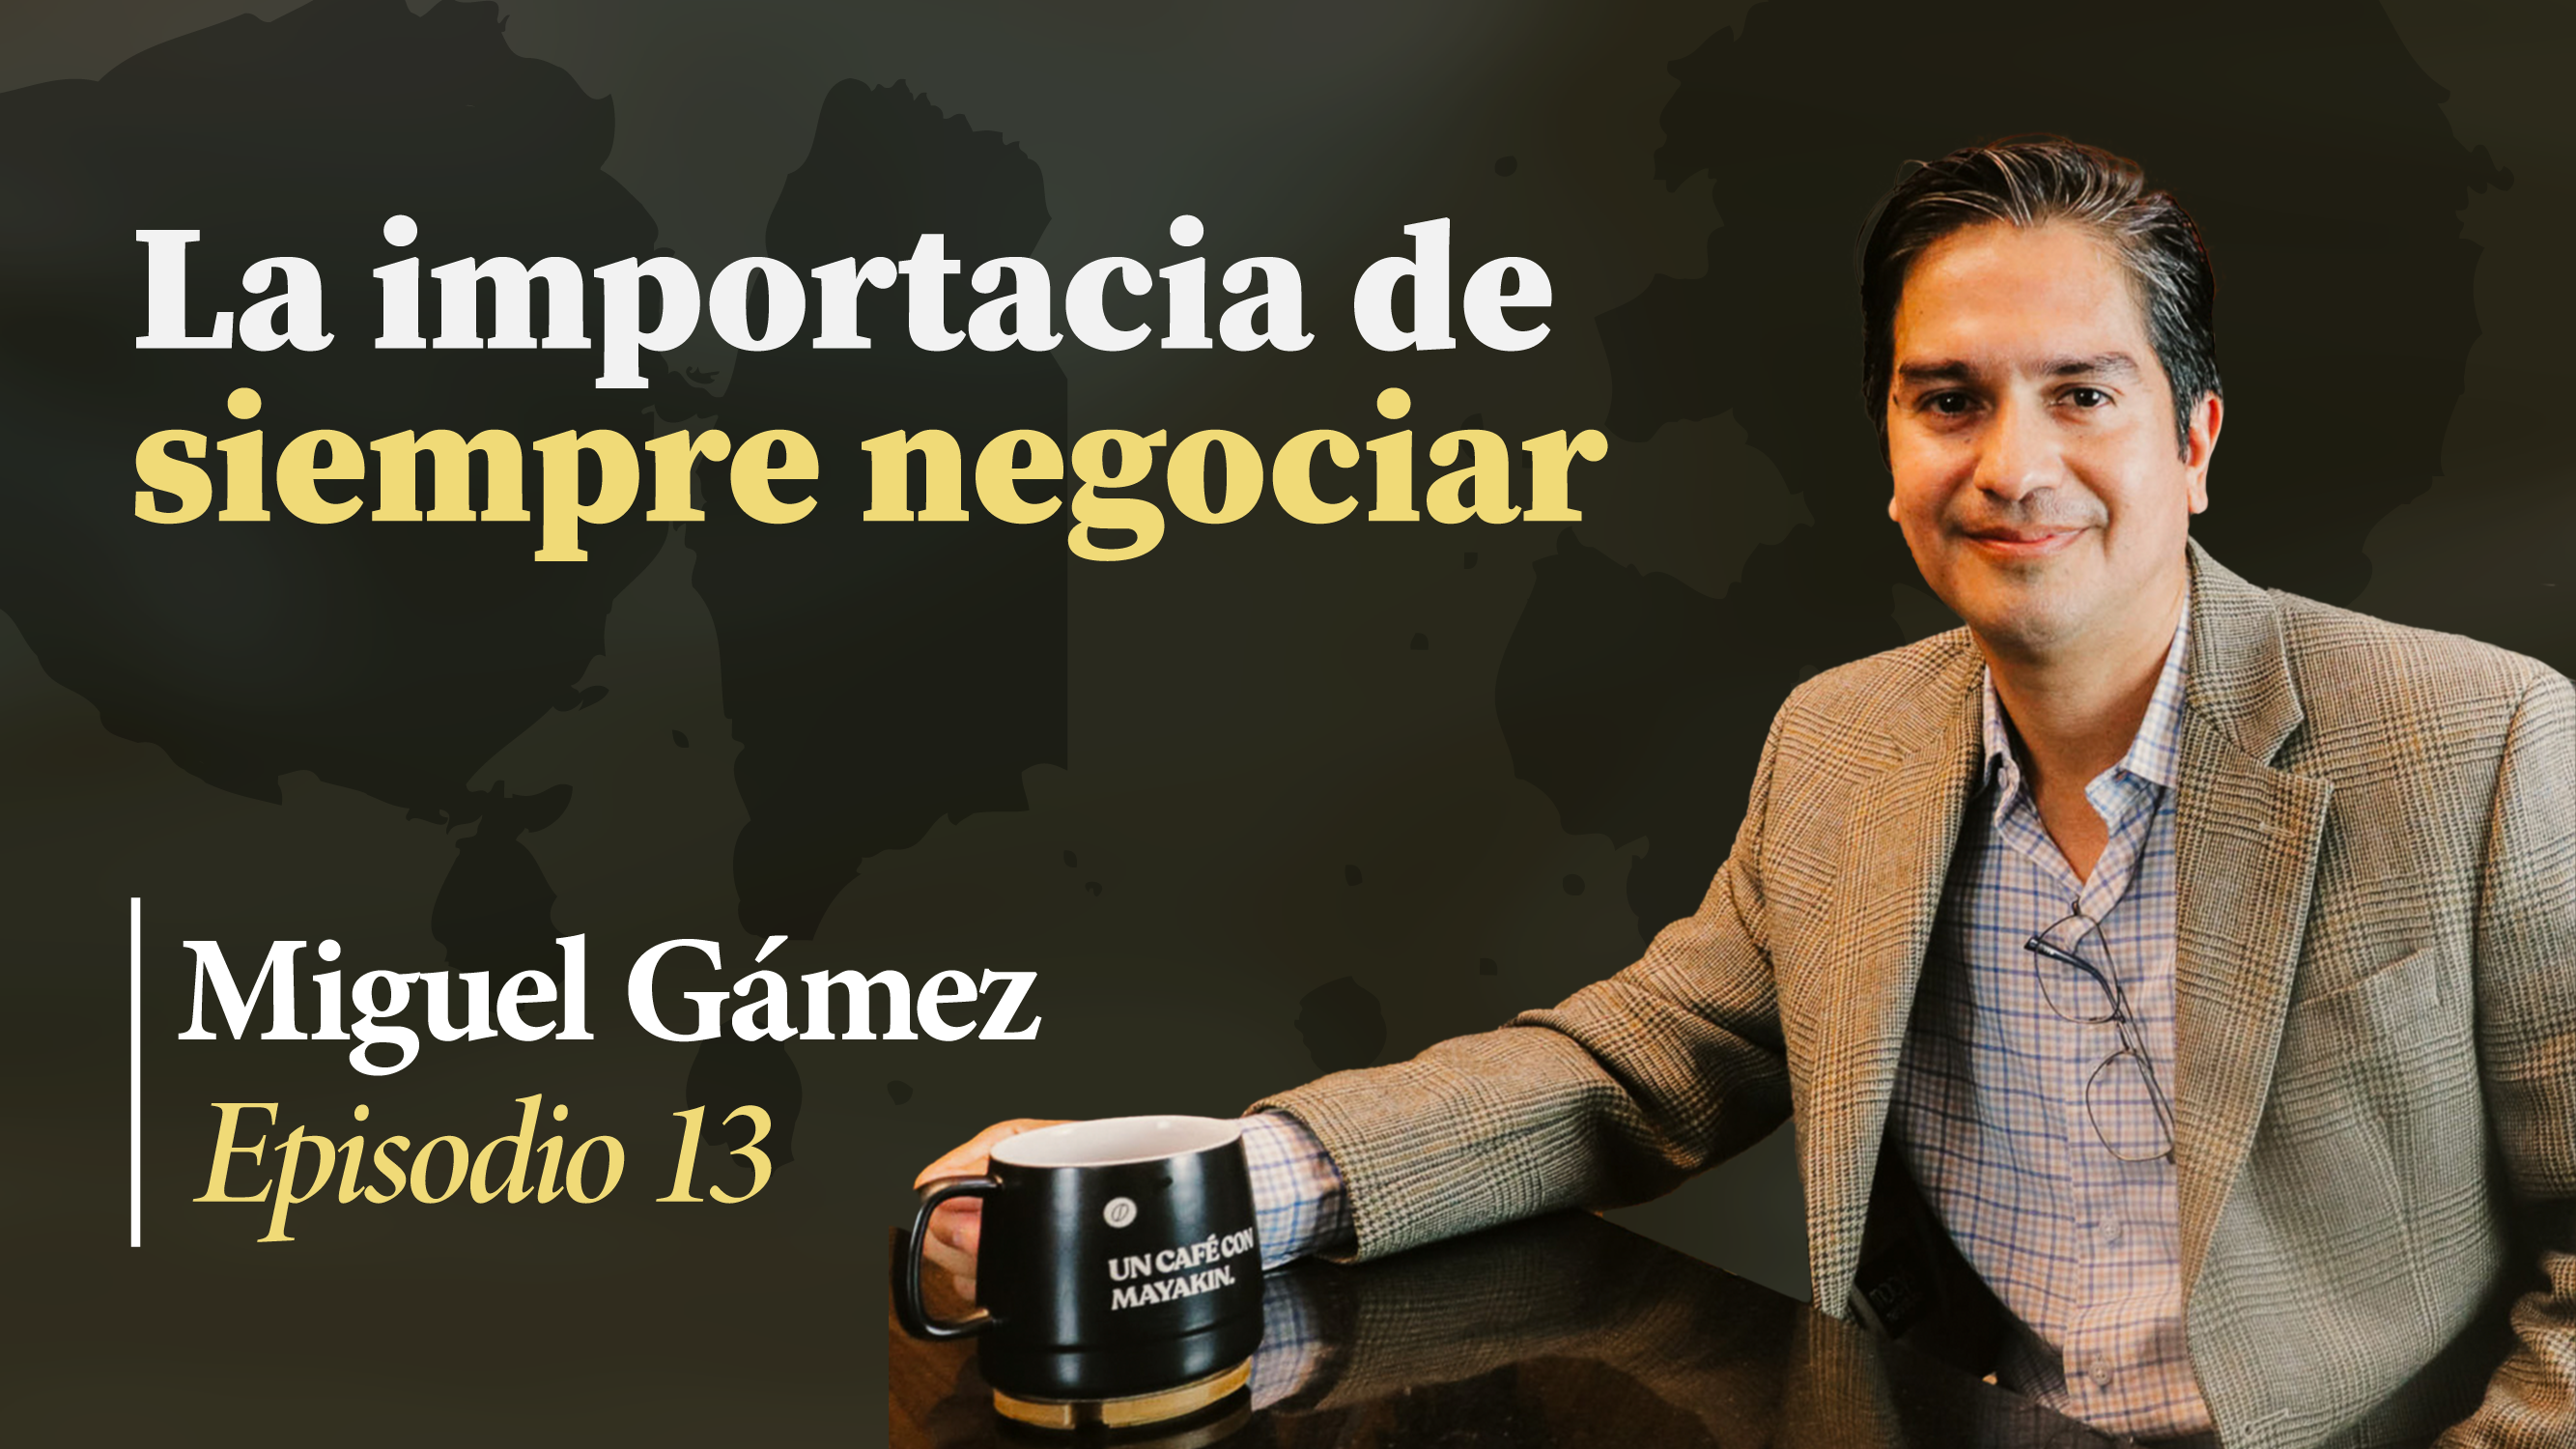 ¡La importancia de siempre negociar!| Un Café con Mayakin (Ep:13) Miguel Gámez